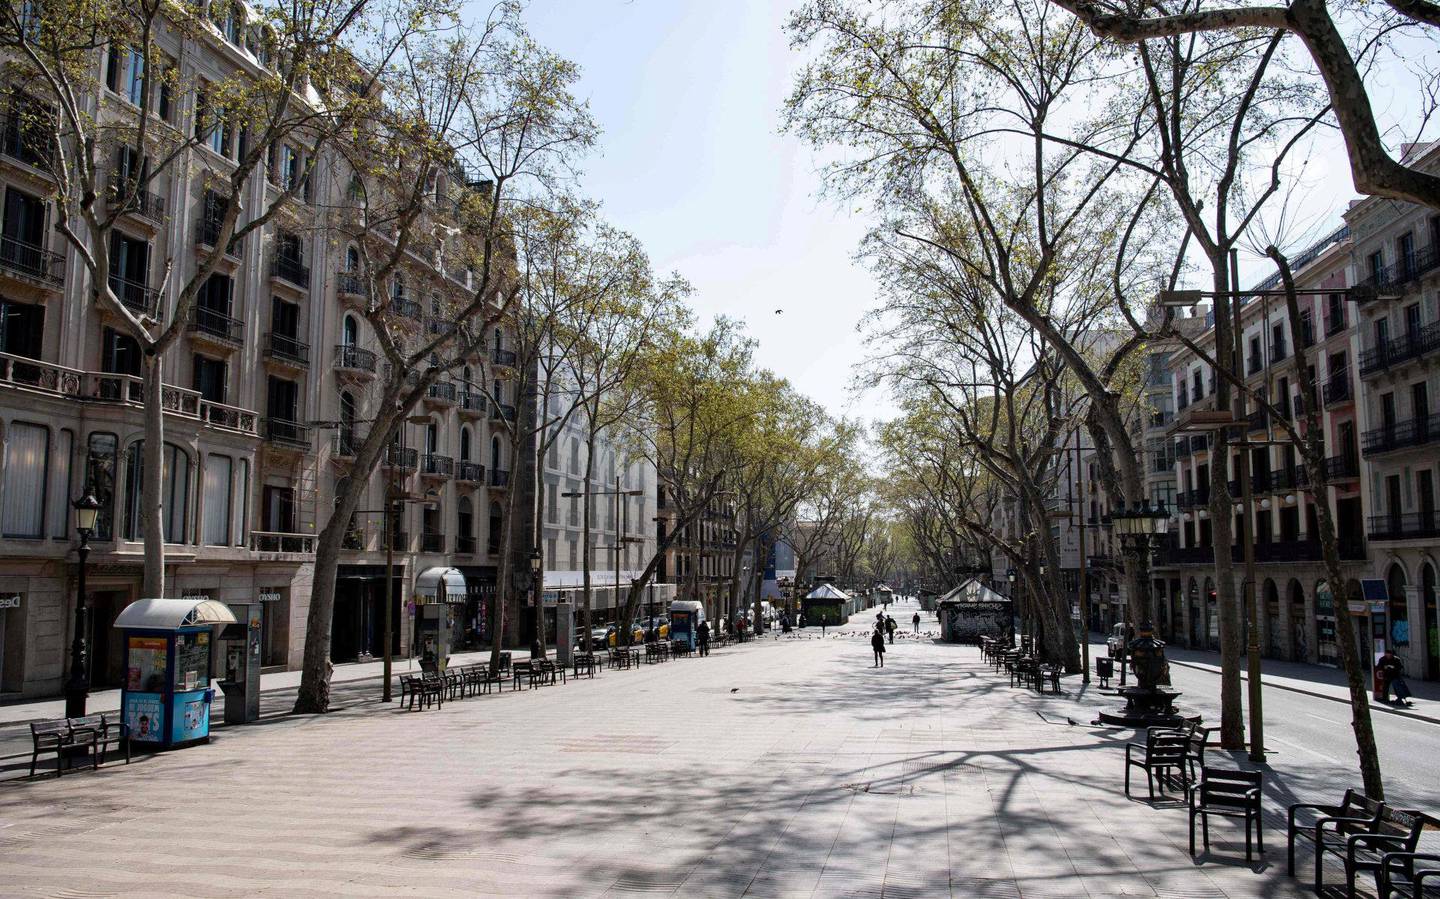 Spania er et av de hardest rammede landene i Europa. Barcelonas travle hovedgate Las Ramblas er normalt fylt til trengsel. Nå er det                 ingen her. Foto: Josep Lago/Ntb scanpix